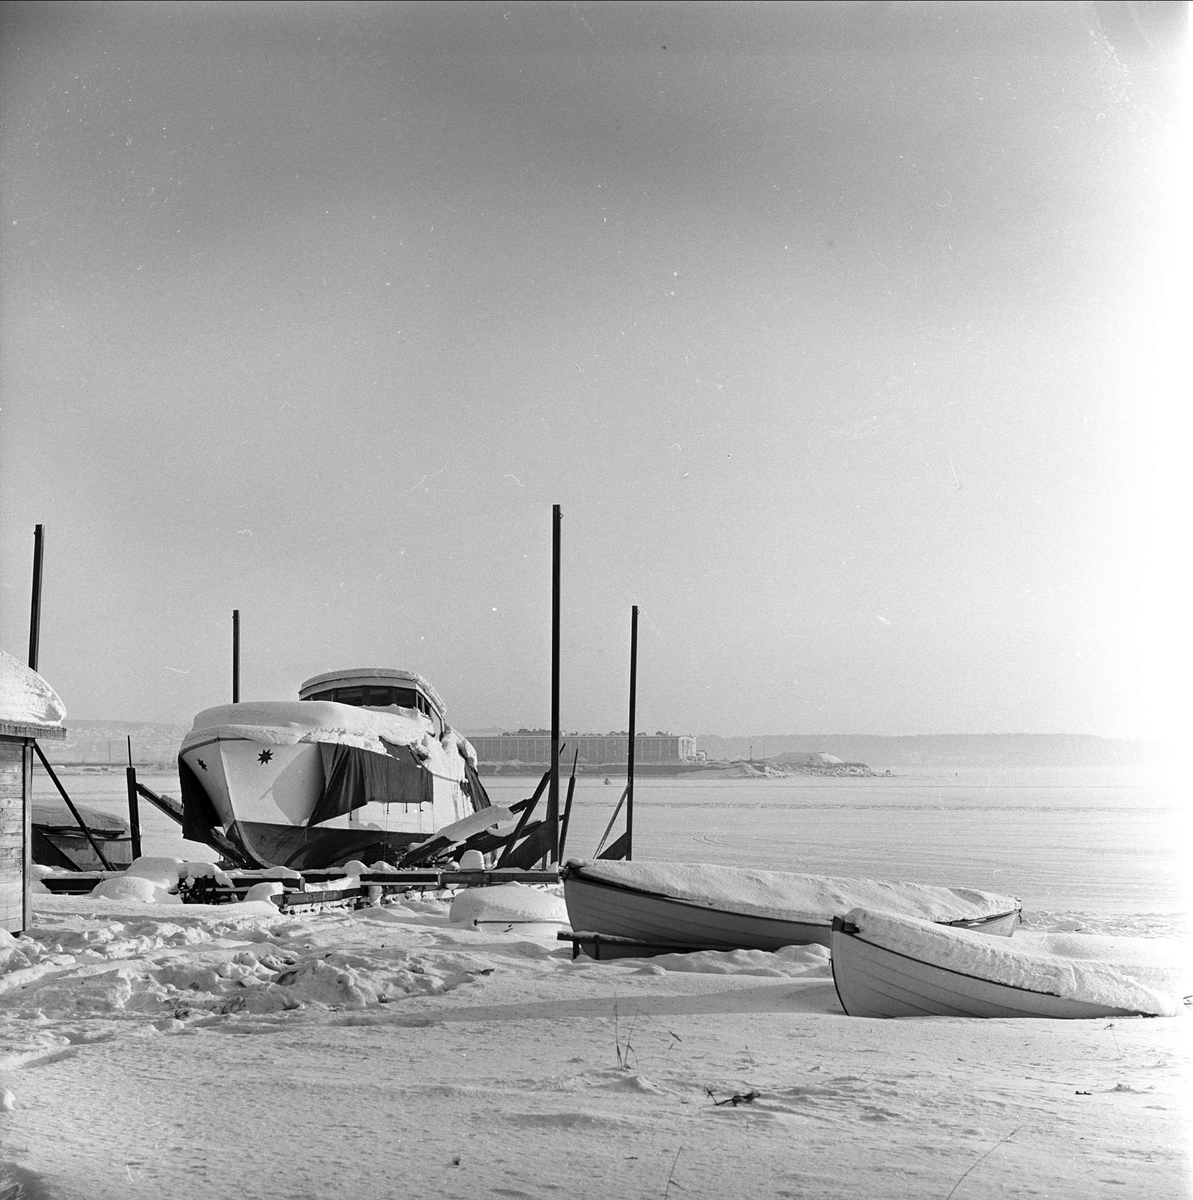 Div. glimt fra Hamar i forbindelse med NM på skøyter, 15.01.1963. Islagt havn med båter. Båt med tretak dekket av snø. (Spissbåt fra Mjøsa.)